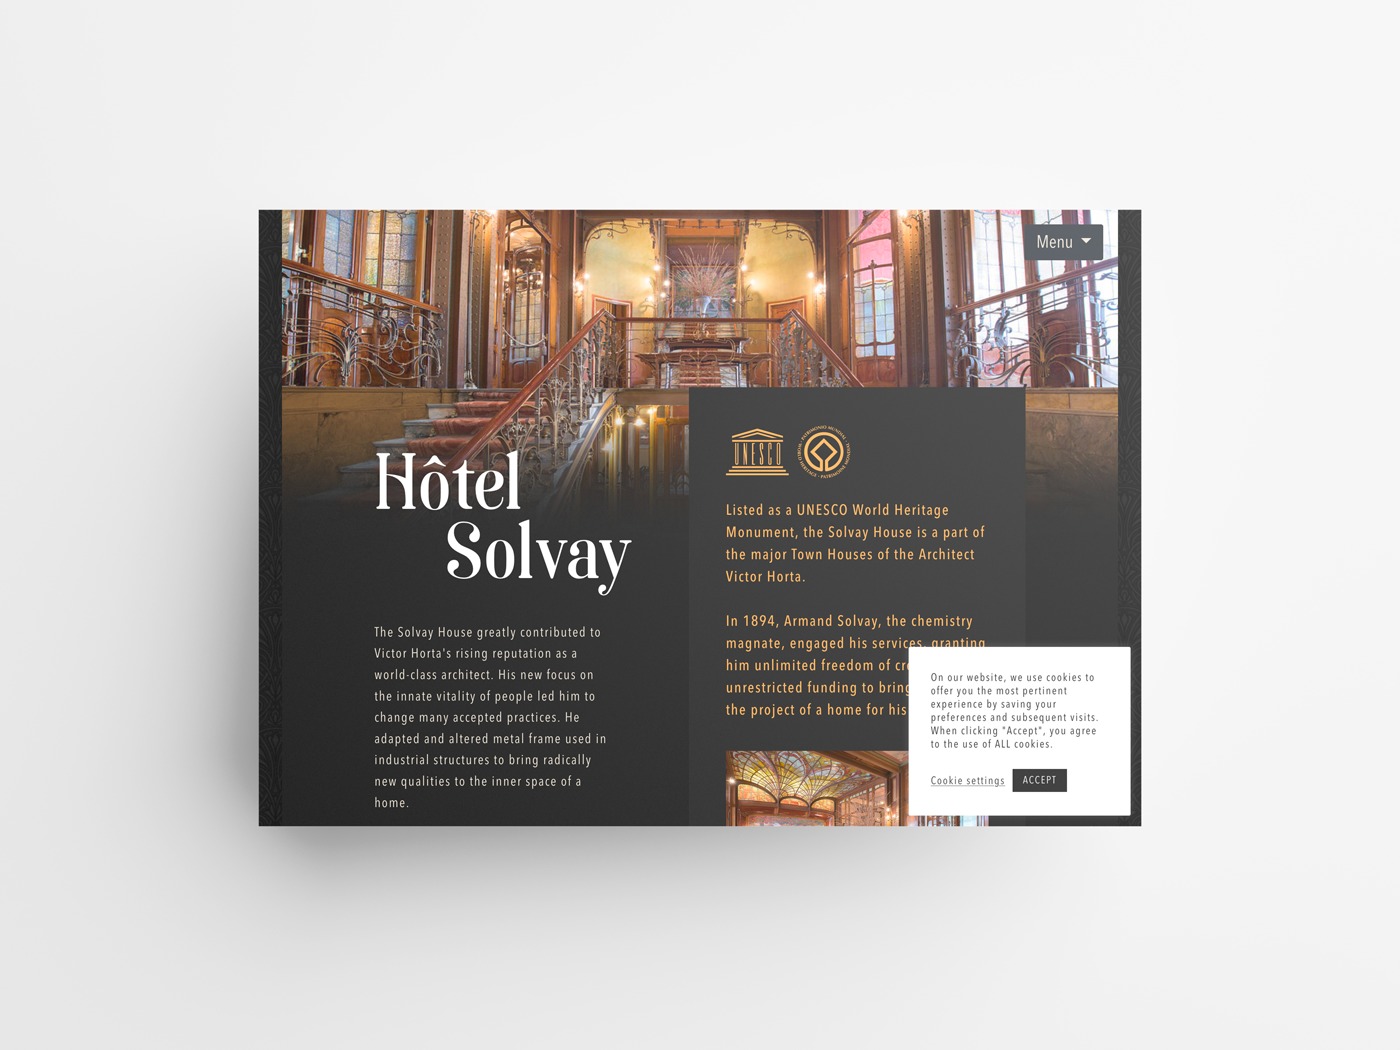 Hôtel Solvay (Booking)